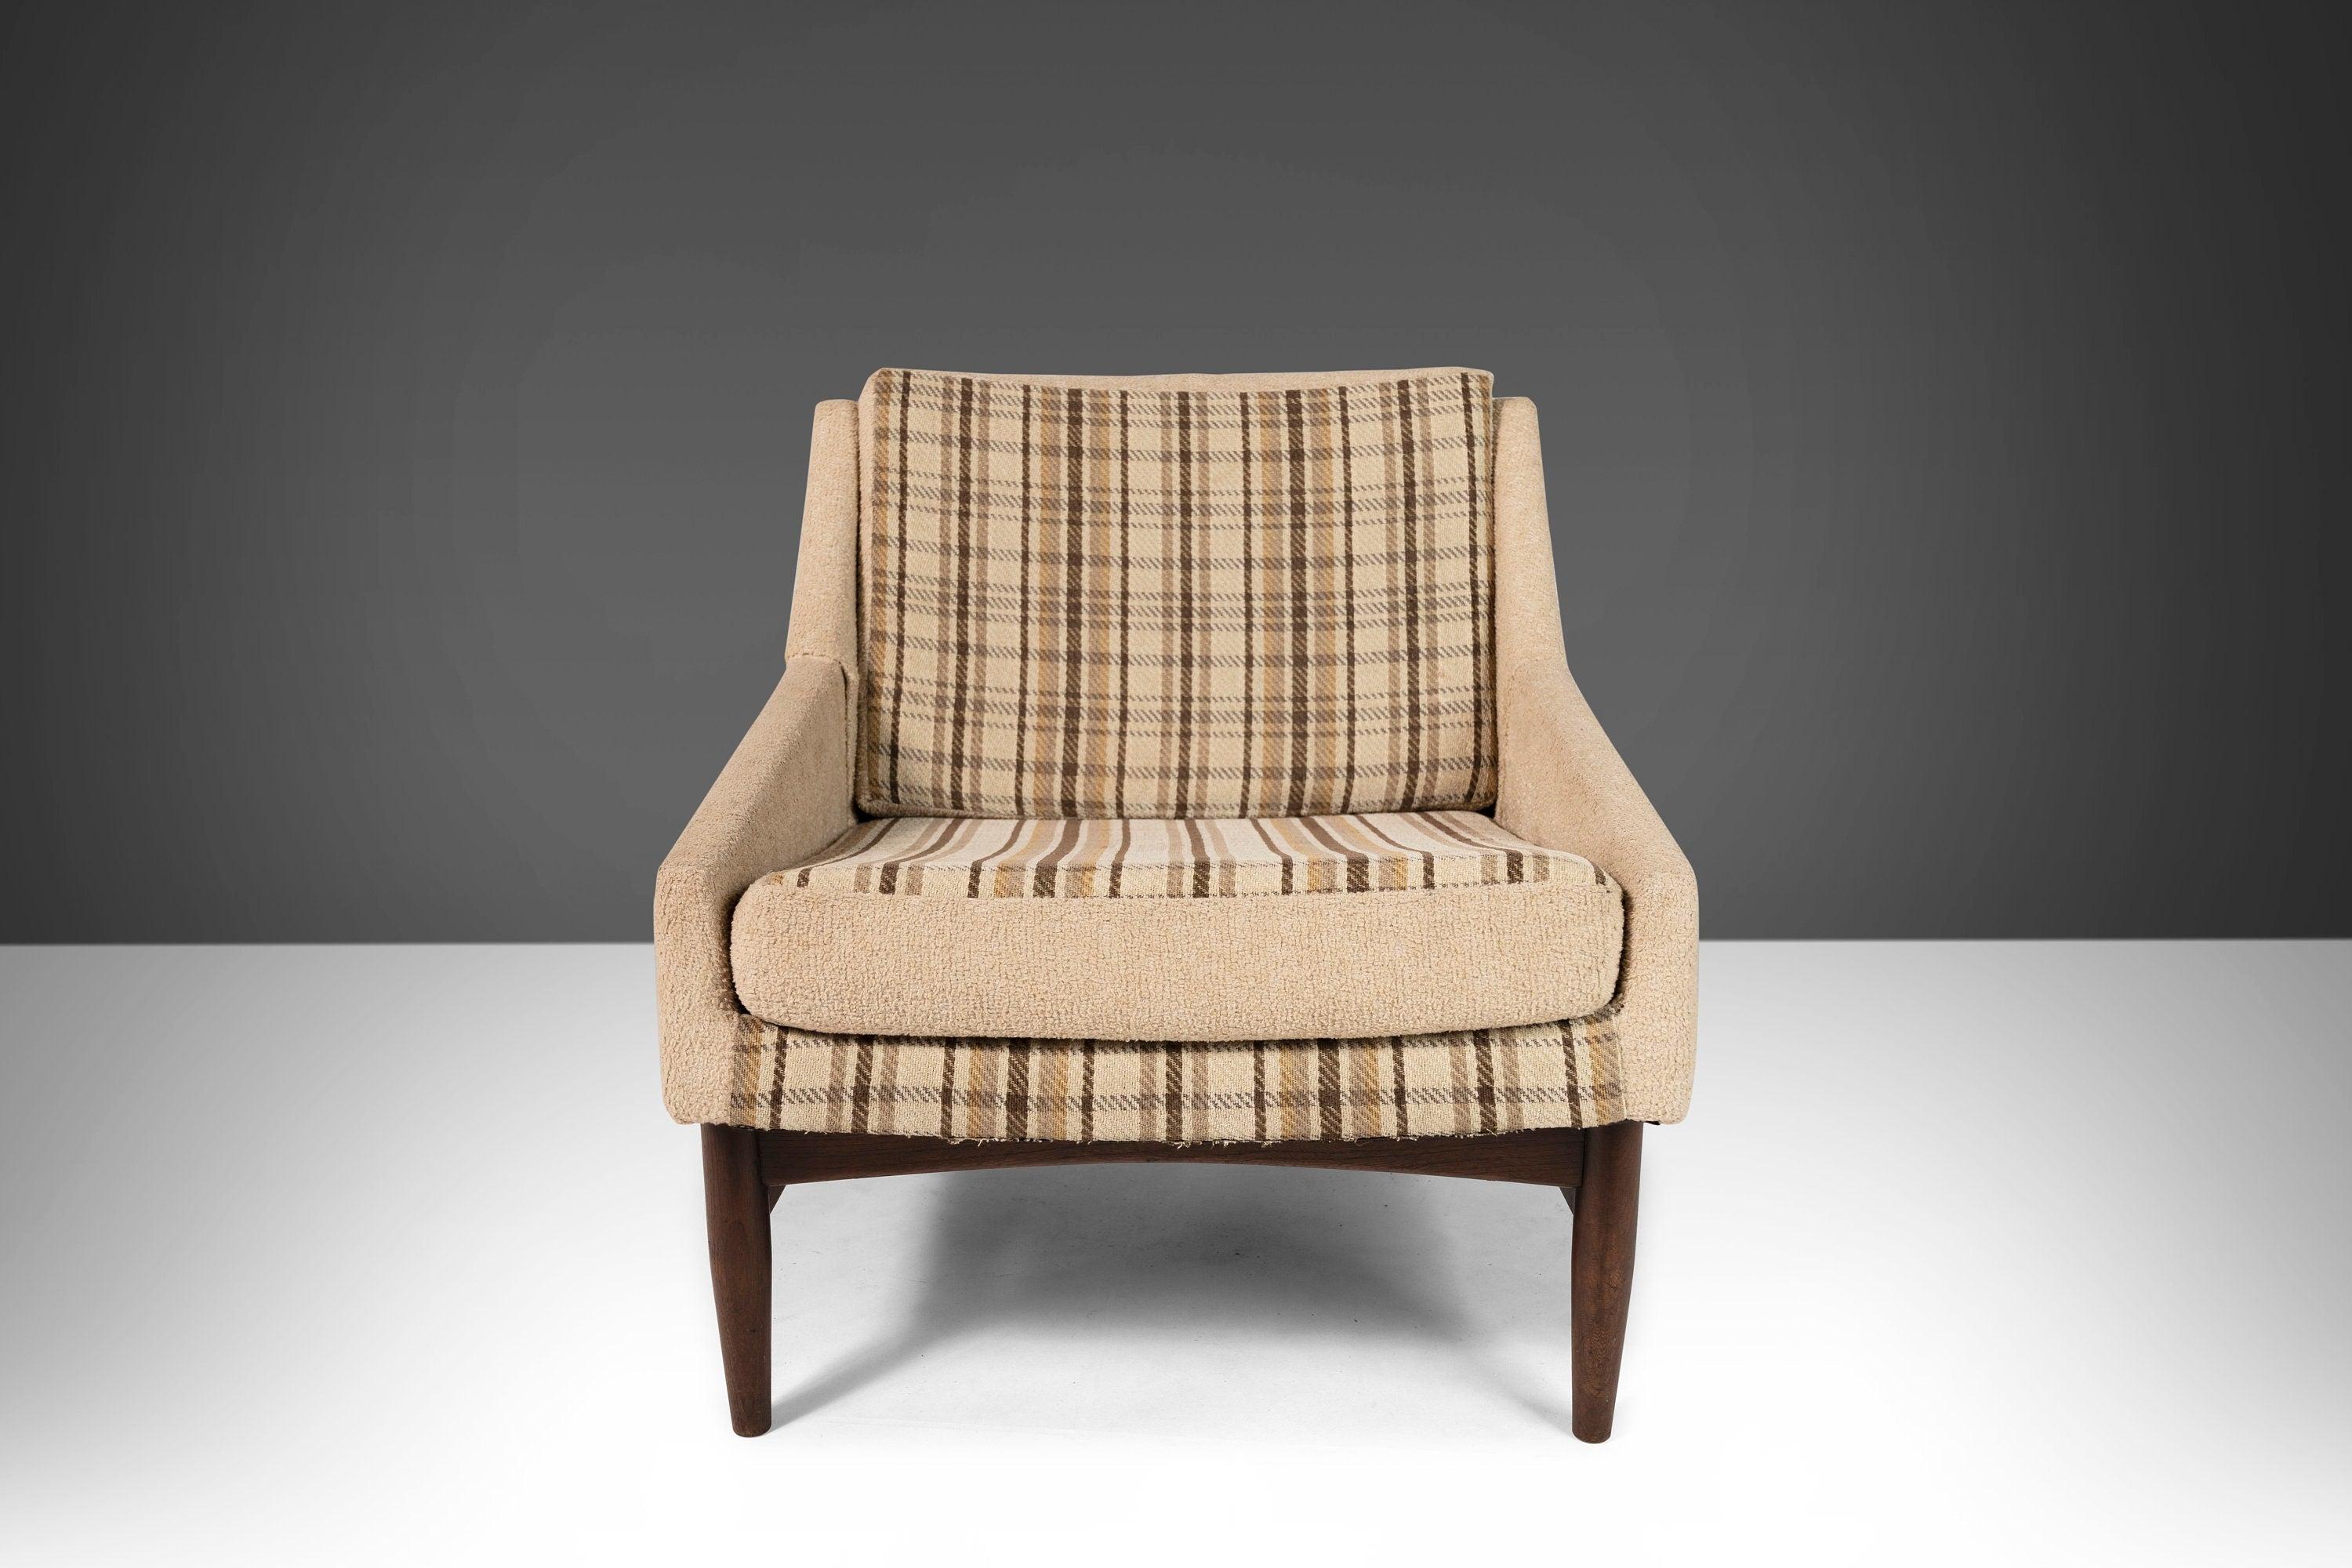 Un ensemble de deux chaises longues aux lignes et angles parfaits, influencées par les dessins d'Ib Kofod Larsen. Trouvés dans leur revêtement d'origine en tricot. Si cela n'est pas à votre goût, veuillez nous envoyer un message avant de passer à la